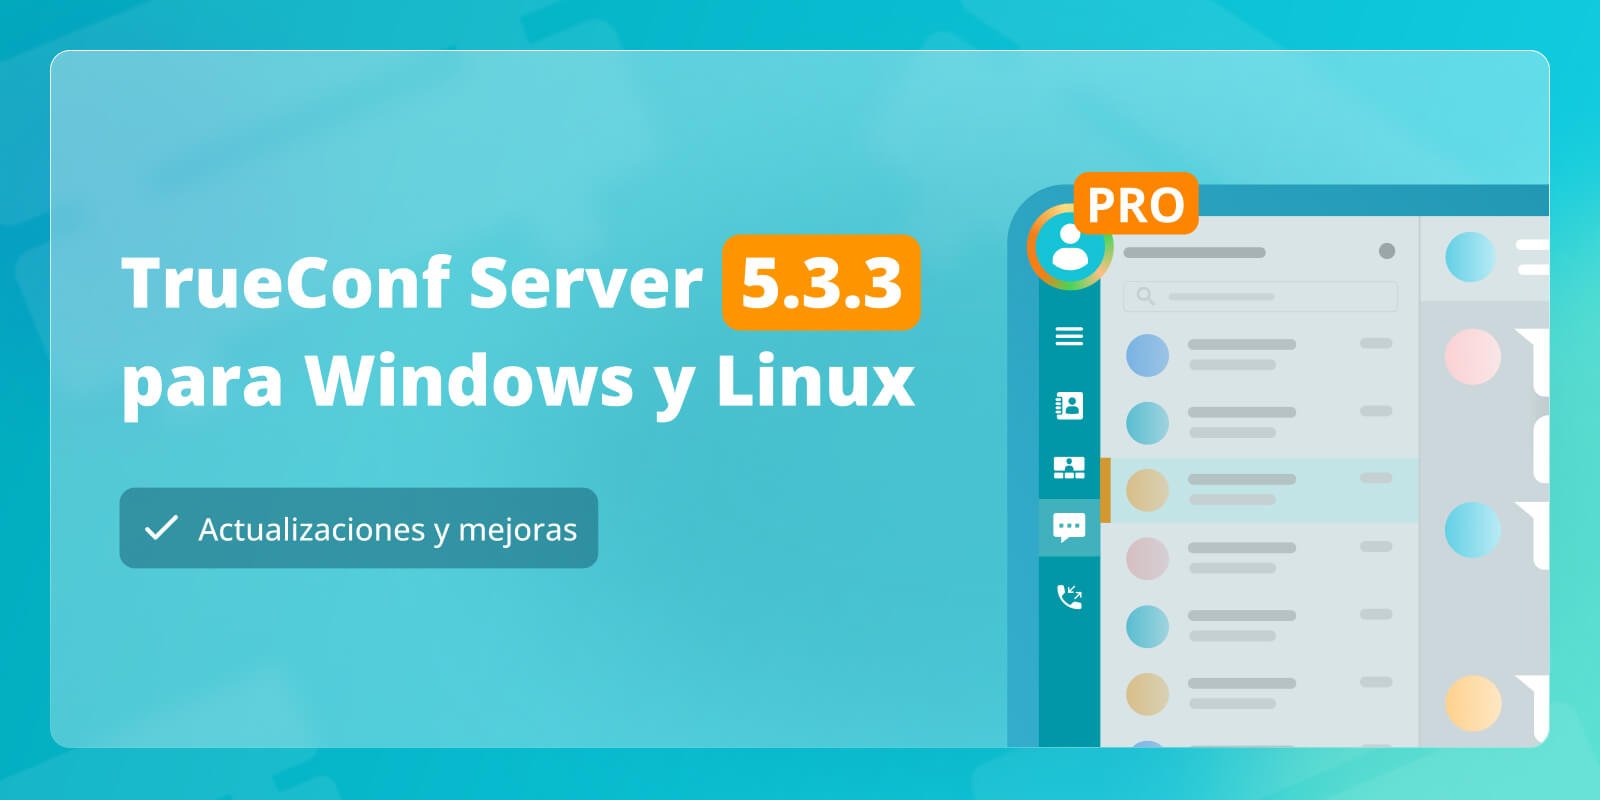 TrueConf Server 5.3.3: actualizaciones y mejoras 3